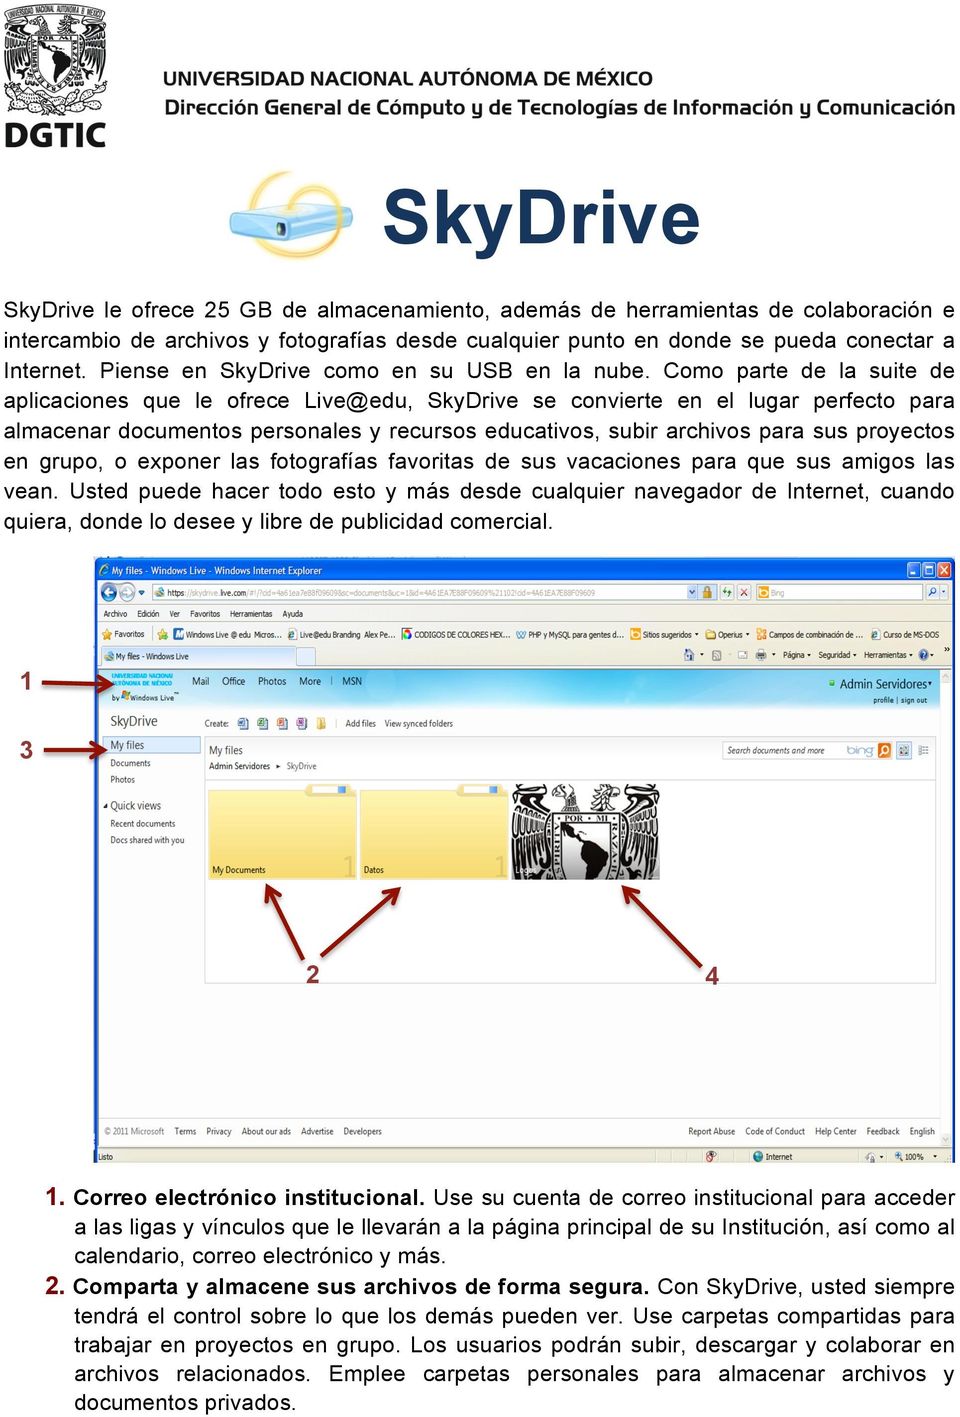 Como parte de la suite de aplicaciones que le ofrece Live@edu, SkyDrive se convierte en el lugar perfecto para almacenar documentos personales y recursos educativos, subir archivos para sus proyectos